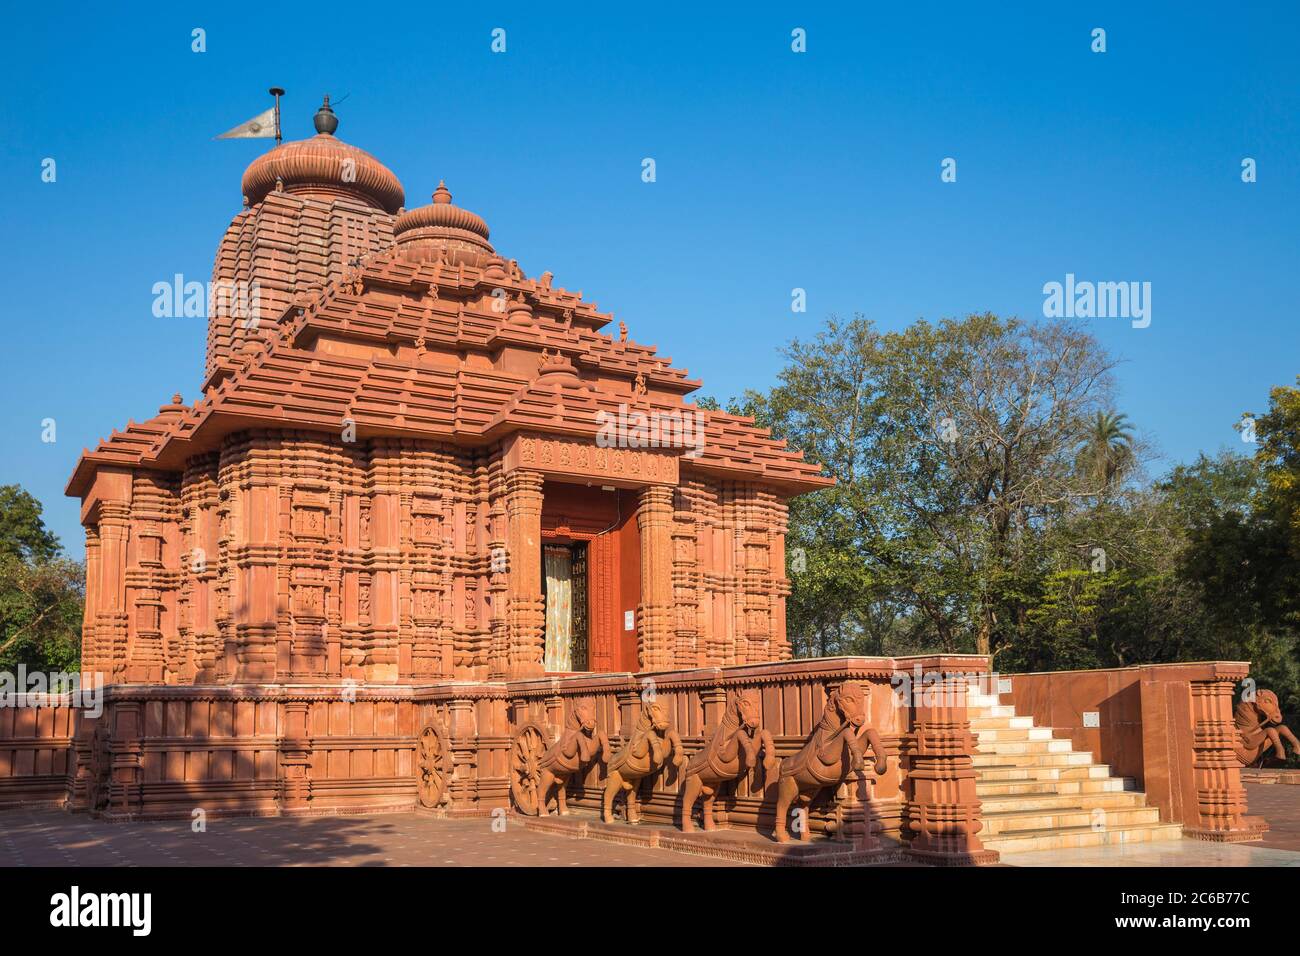 Tempio del sole, Gwalior, Madhya Pradesh, India, Asia Foto Stock